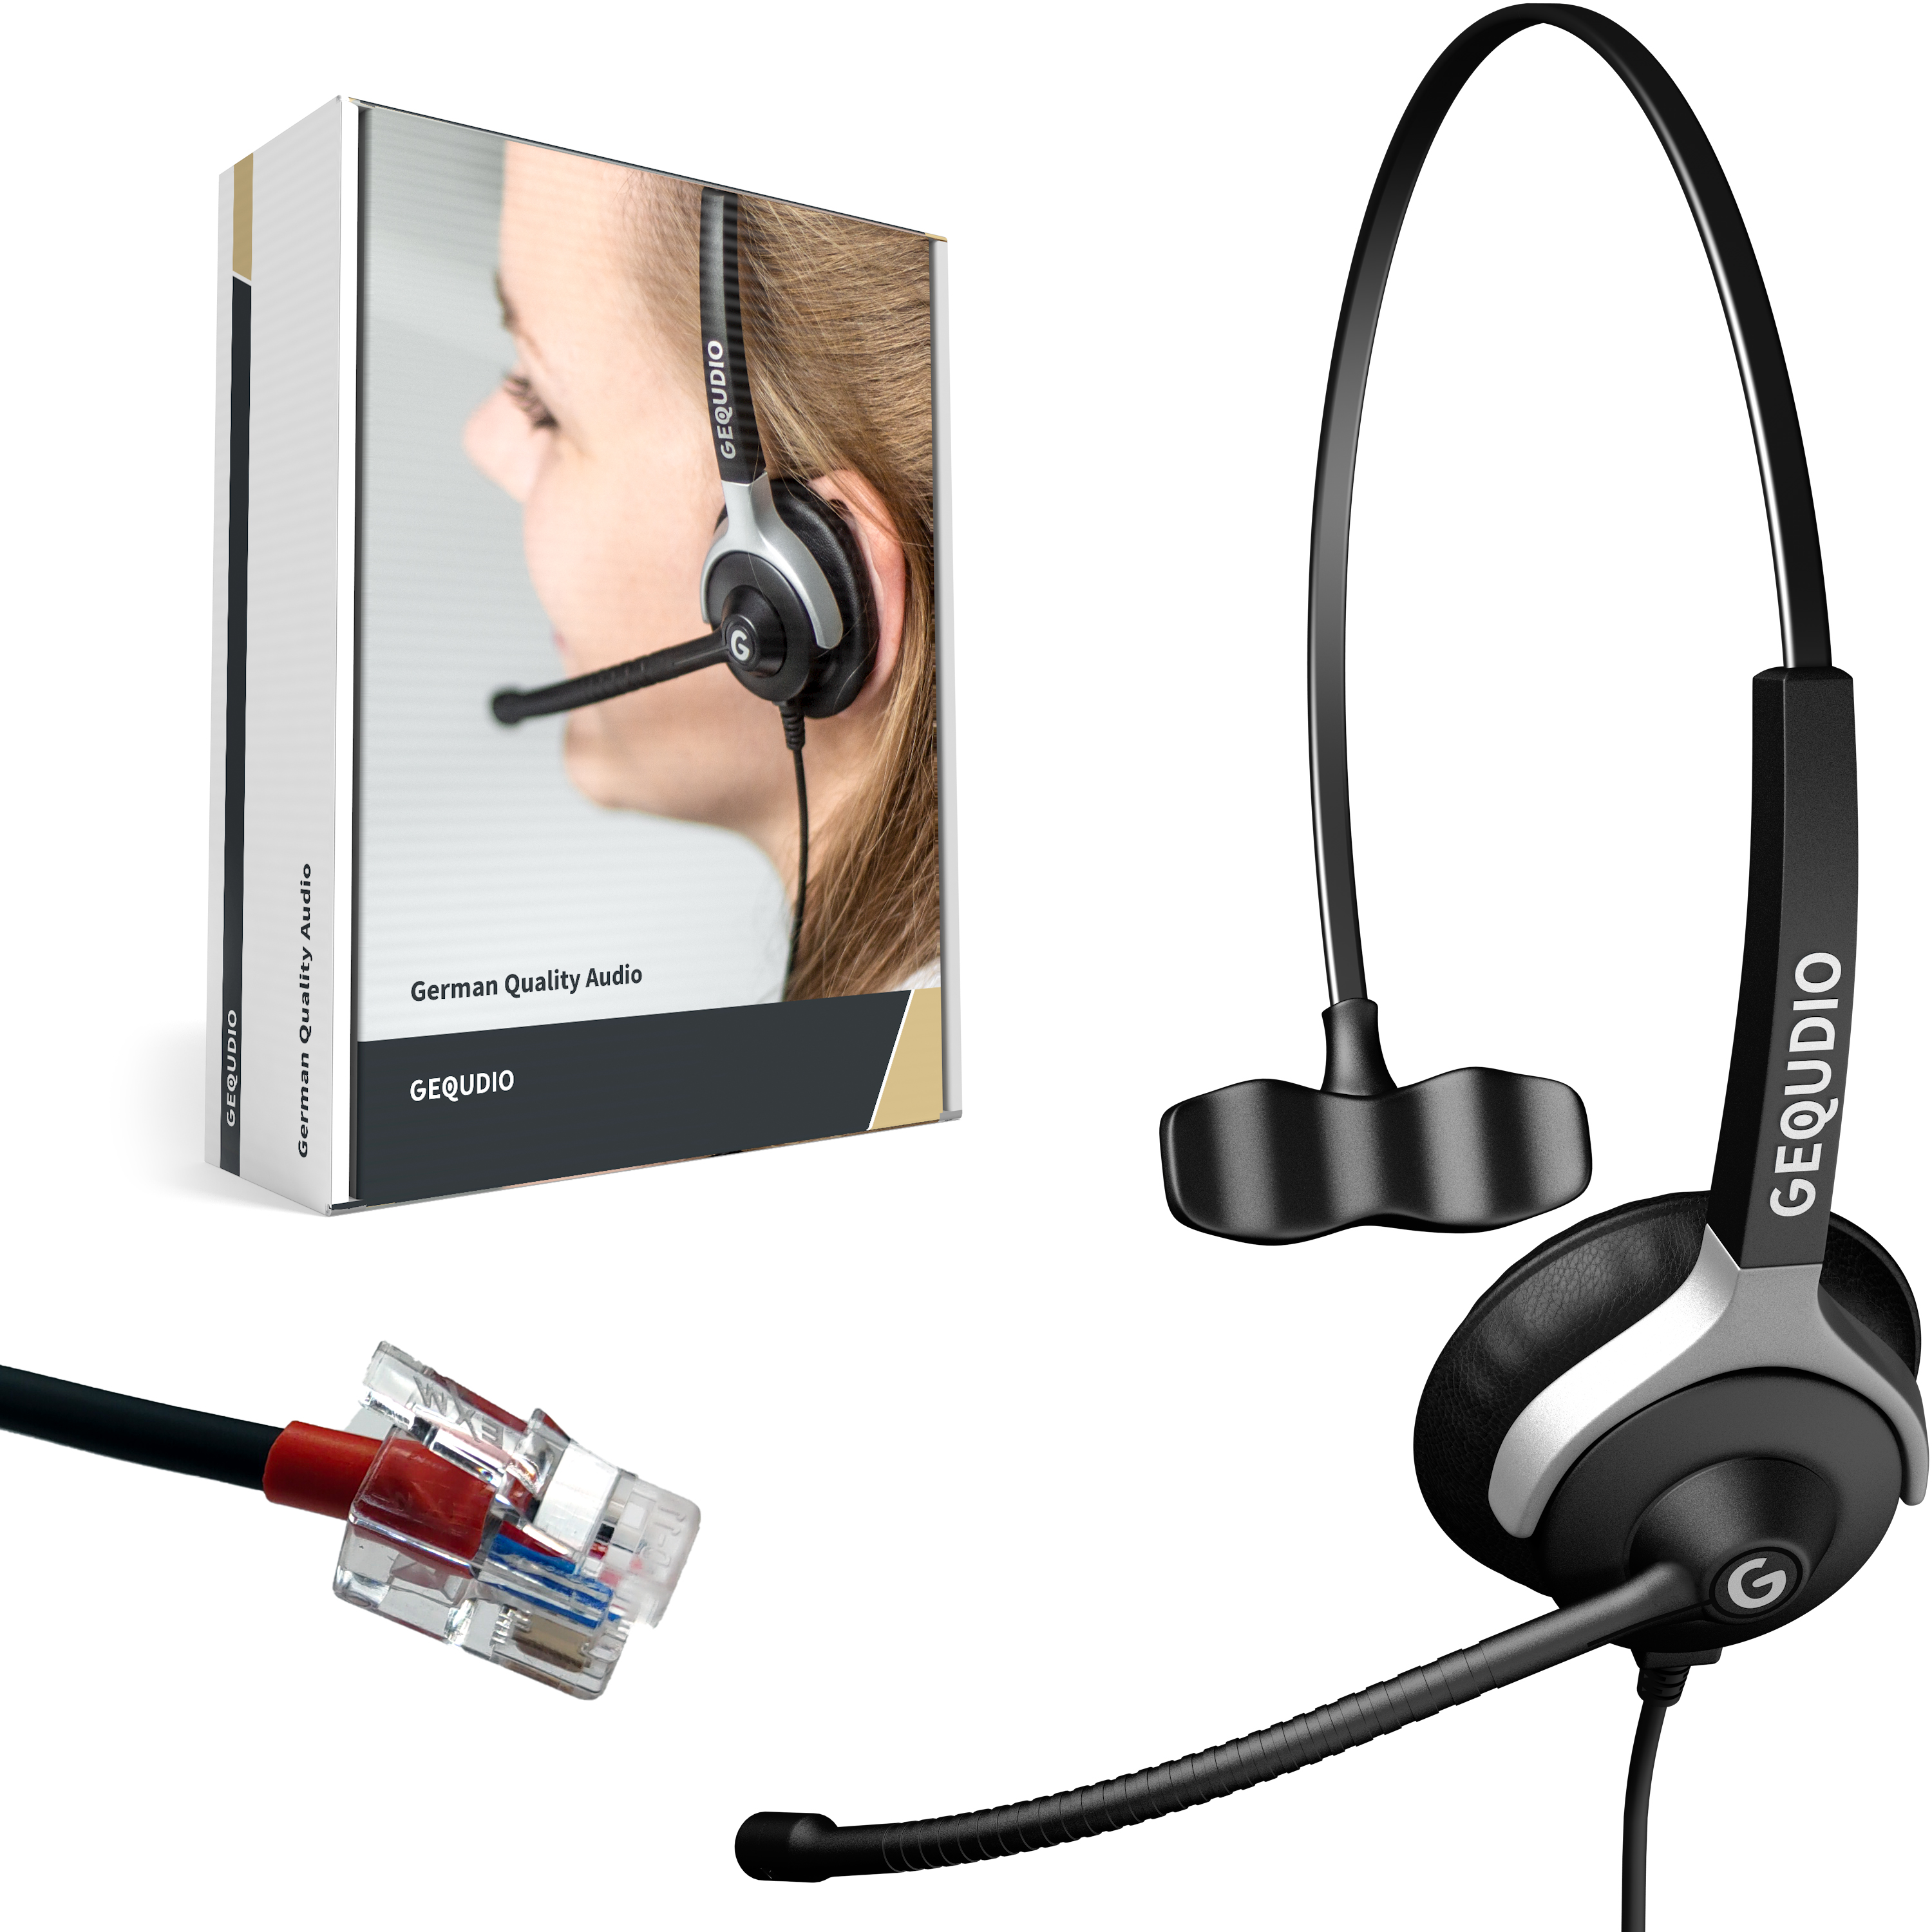 GEQUDIO Headset 1-Ohr für Yealink,Snom,Grandstream mit Kabel - WA9002